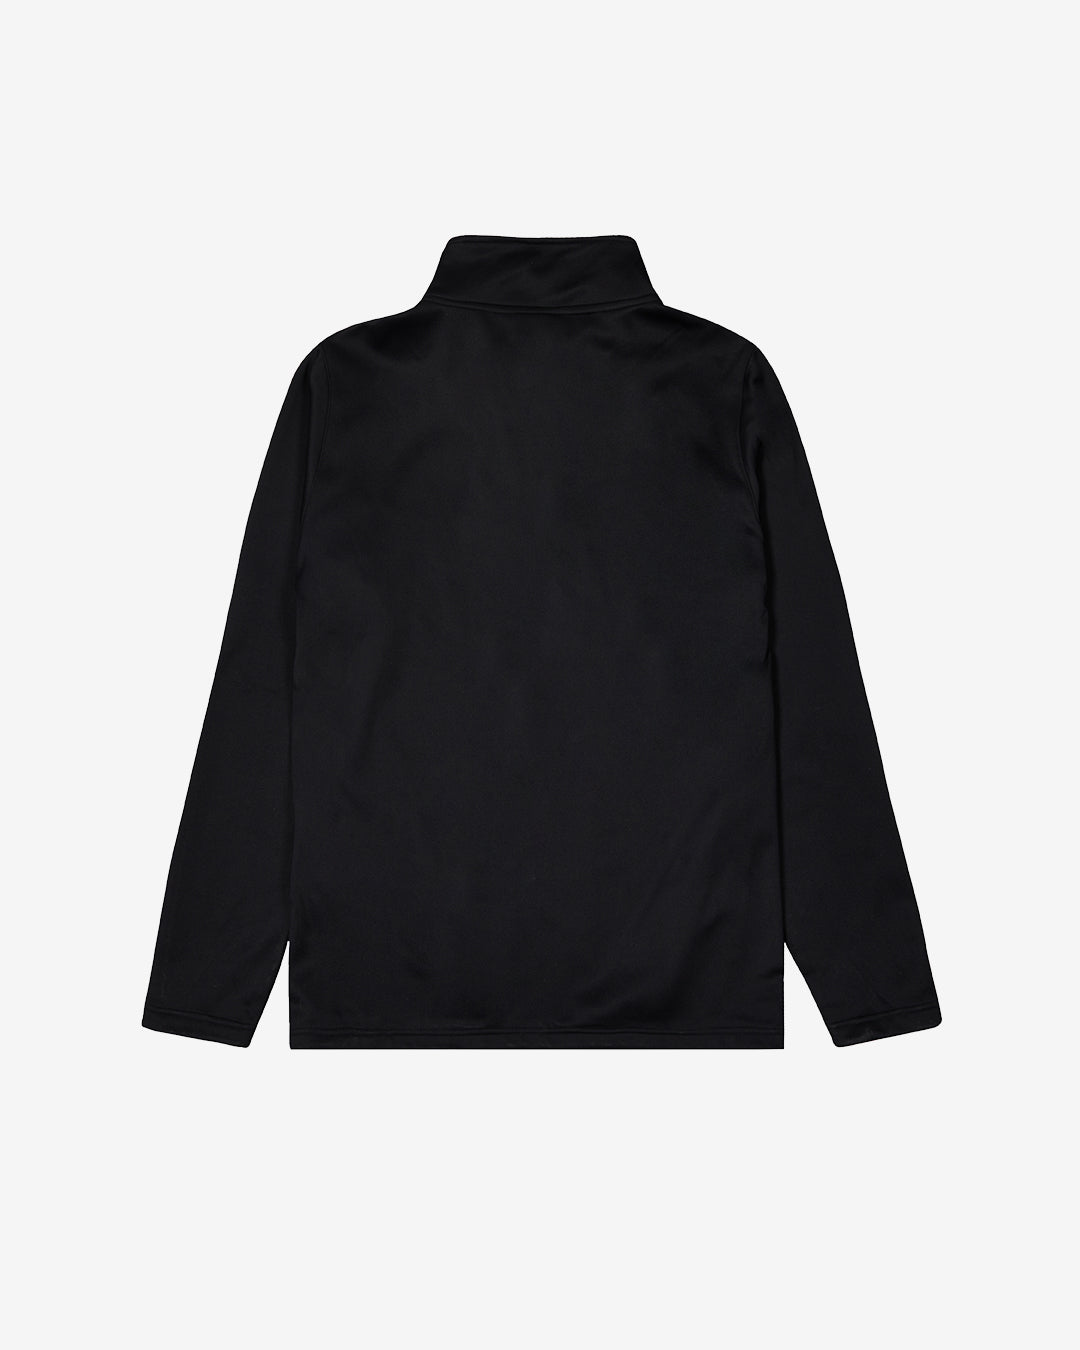 U:0209 - Quarter Zip Pullover 2.0 - Black